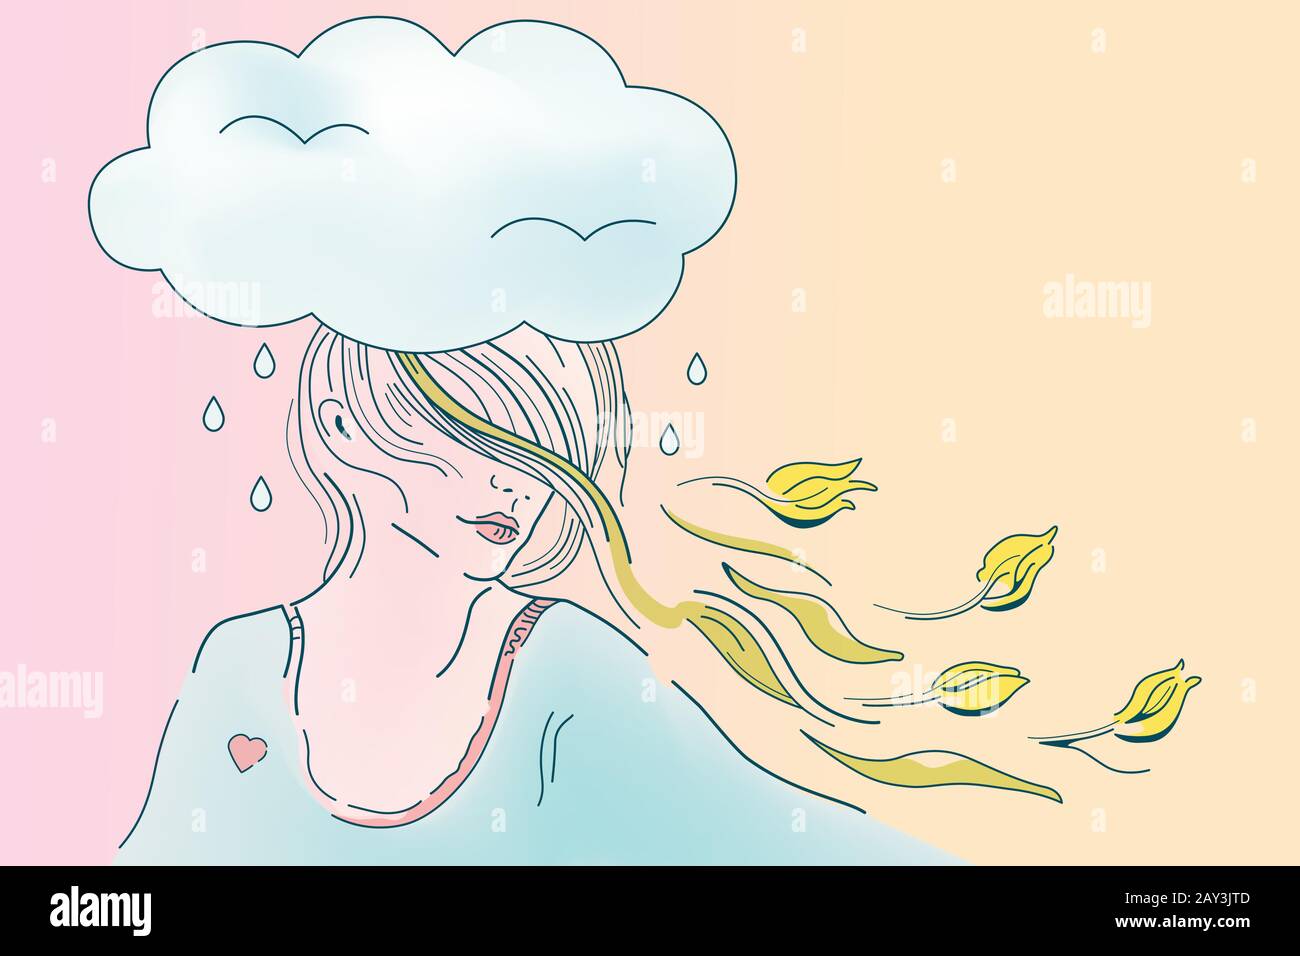 Illustrazione vettoriale della copertura del tempo di primavera, ragazza di umore romantico, donna con i capelli volanti e tulipani gialli. Fiori nella Giornata della Donna. Conce psicologica Illustrazione Vettoriale